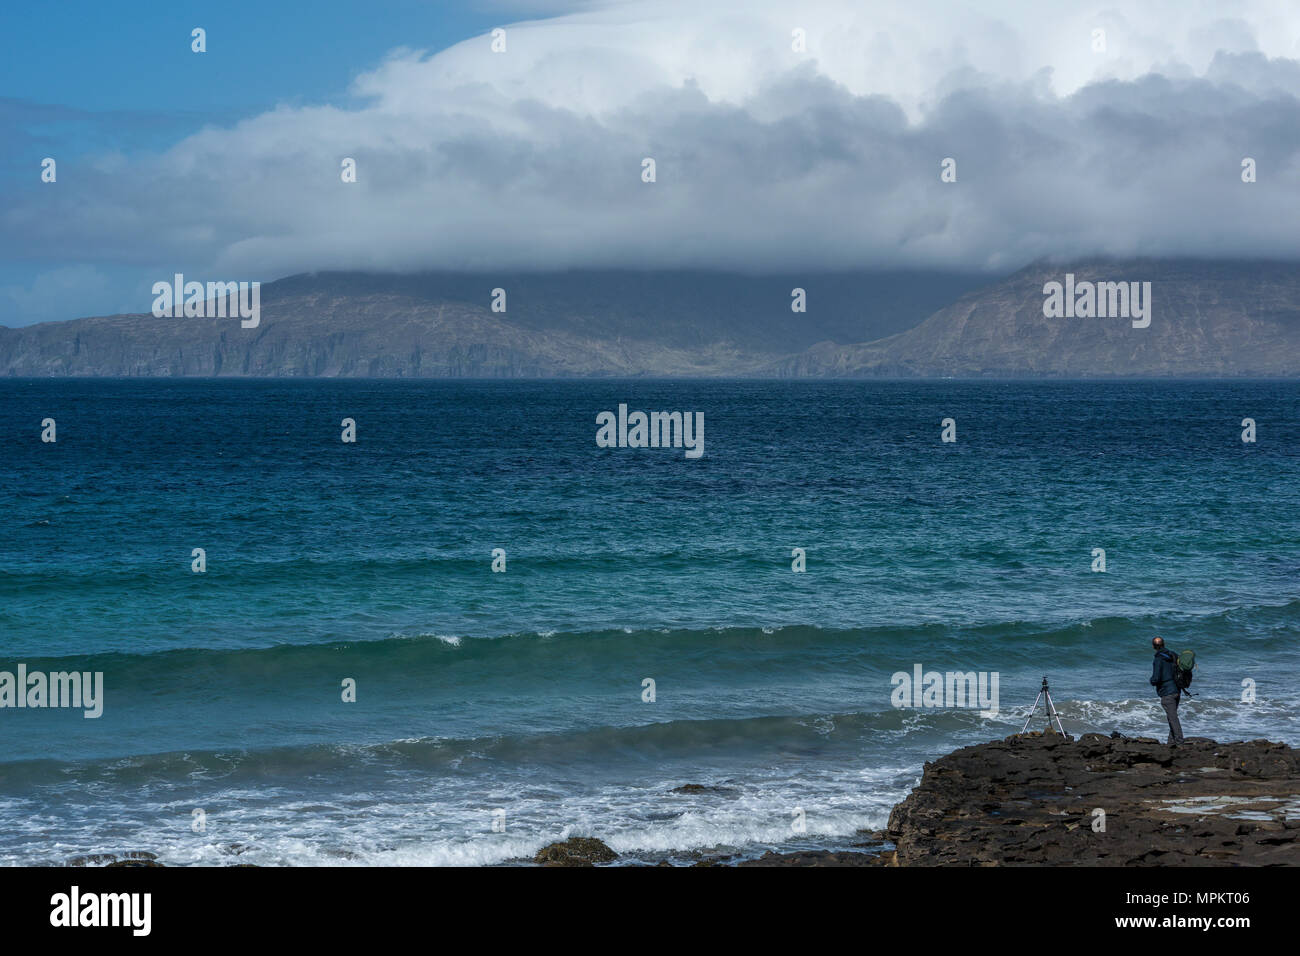 Un photographe considérant la vue sur l'île de Rum de la baie de Liag, à l'île de Eigg, petites îles, Hébrides intérieures, l'Écosse, United Kingdo Banque D'Images